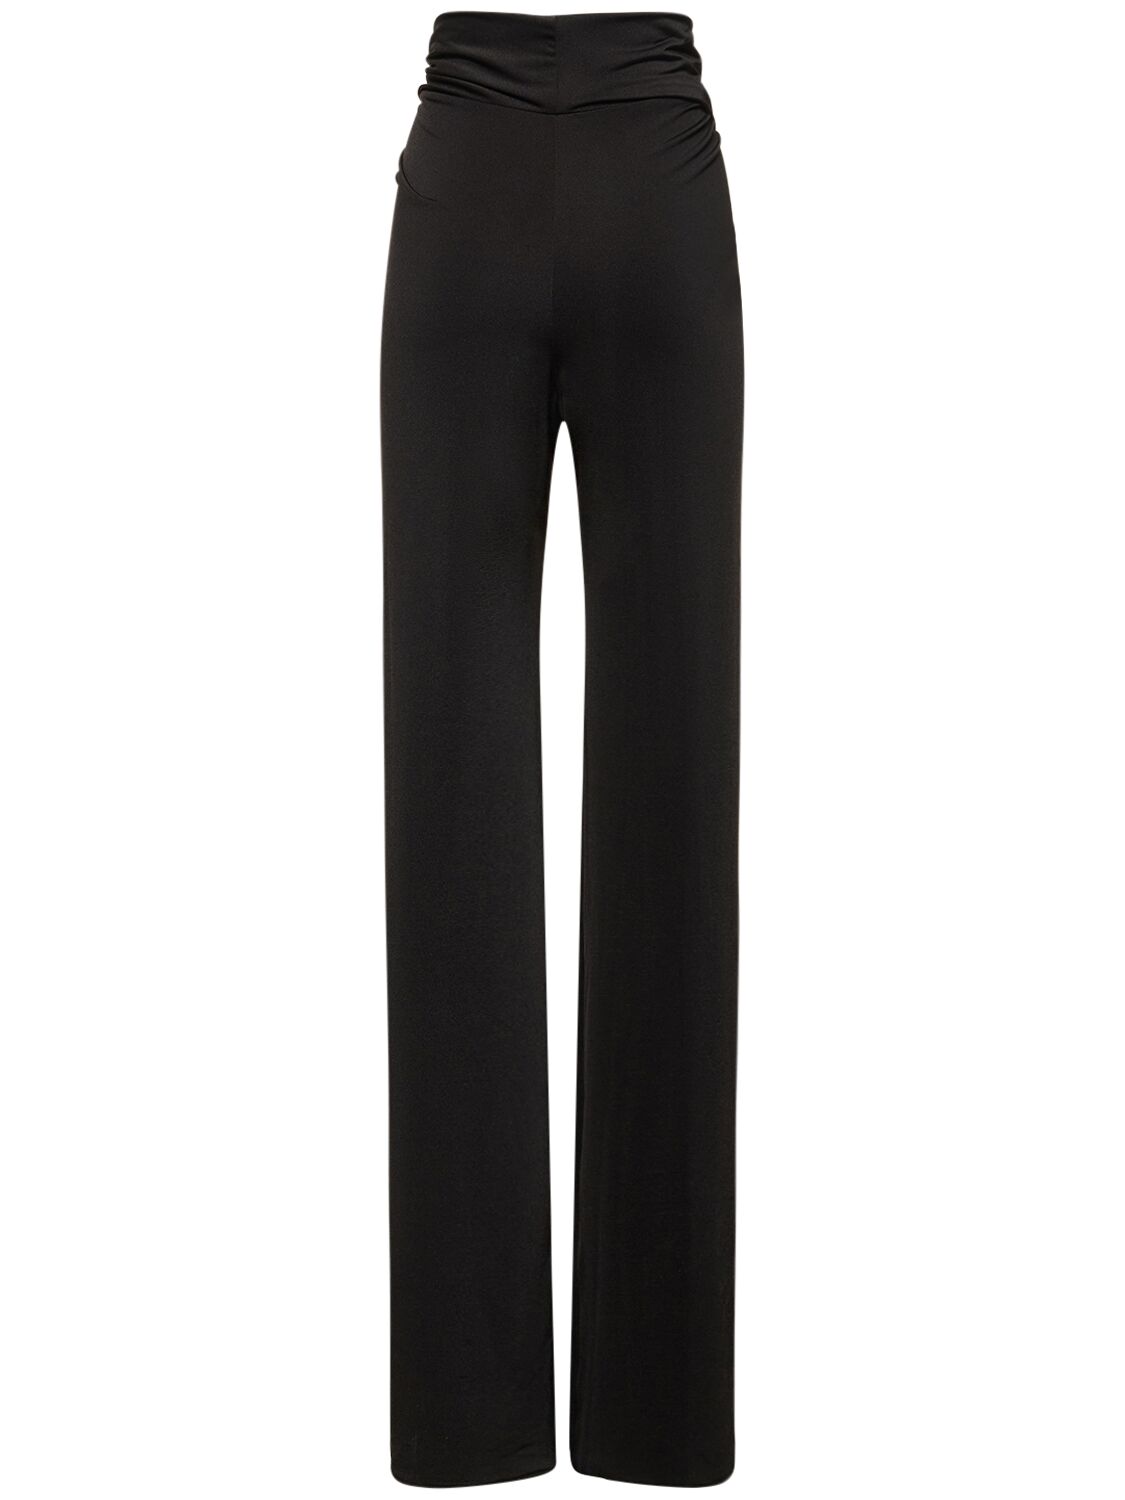 Shop 16arlington Boxte Draped Jersey Pants In Black